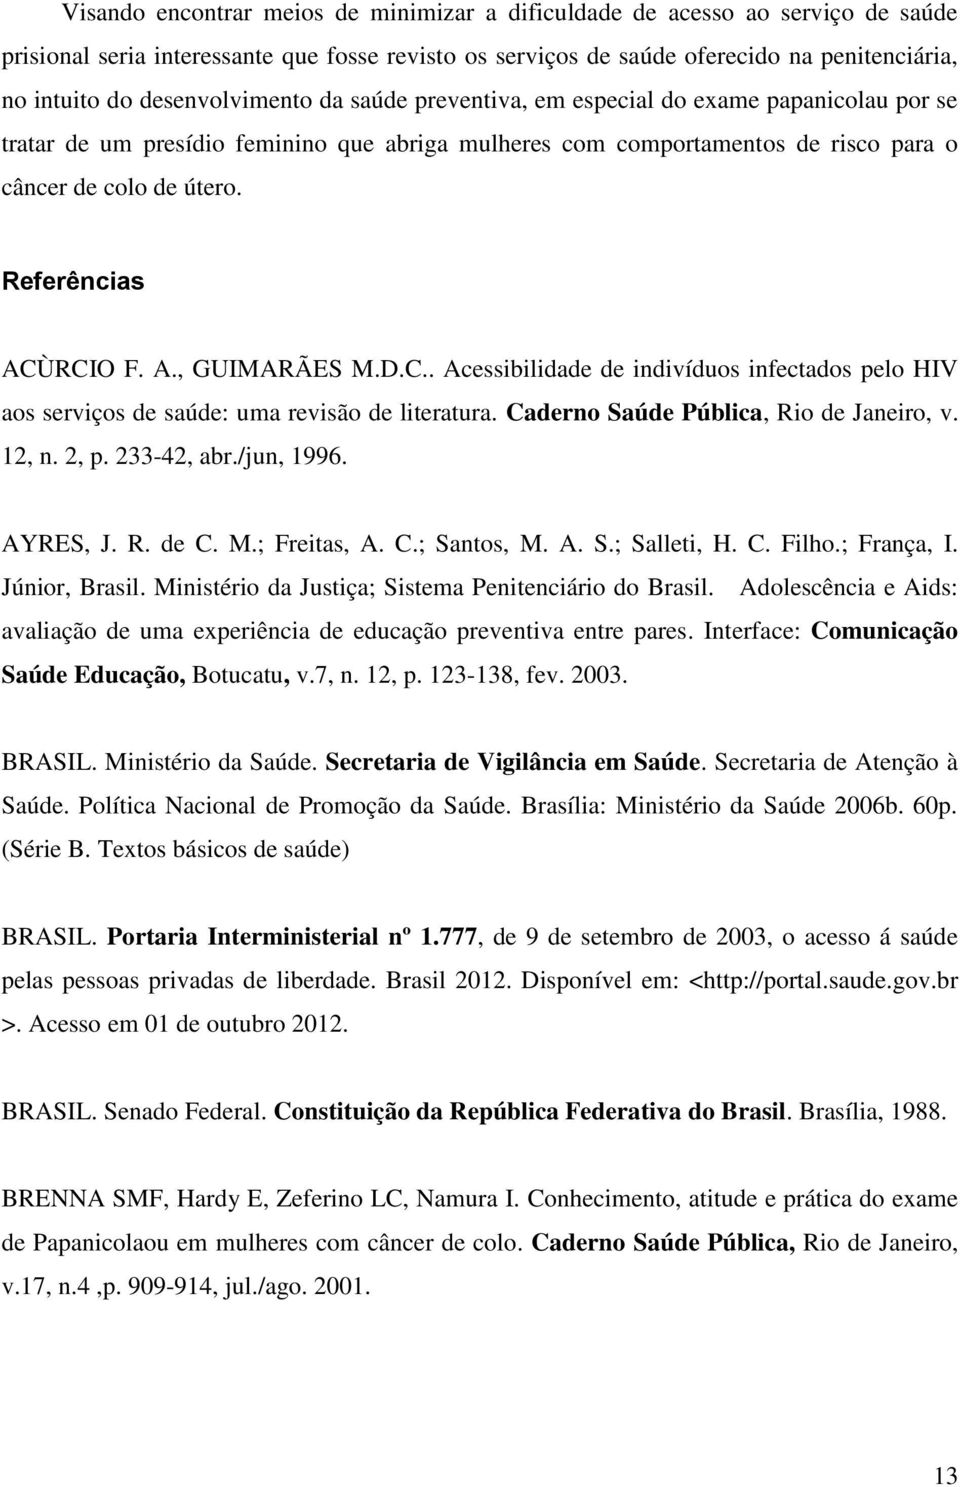 Referências ACÙRCIO F. A., GUIMARÃES M.D.C.. Acessibilidade de indivíduos infectados pelo HIV aos serviços de saúde: uma revisão de literatura. Caderno Saúde Pública, Rio de Janeiro, v. 12, n. 2, p.